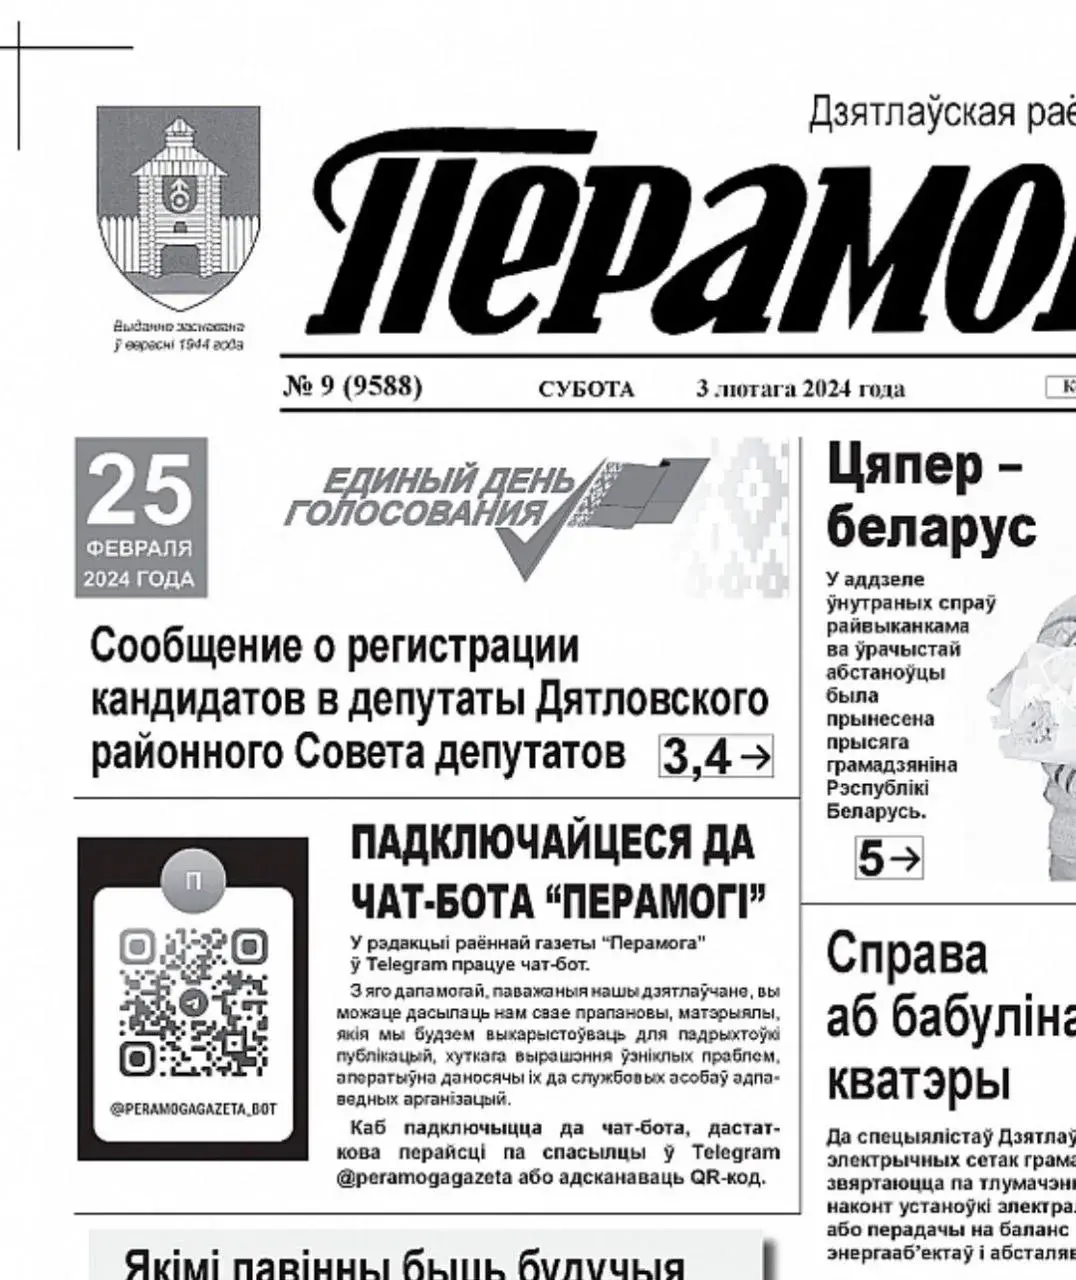 Раённая газета запусціла свой "чат-бот "Перамогі"